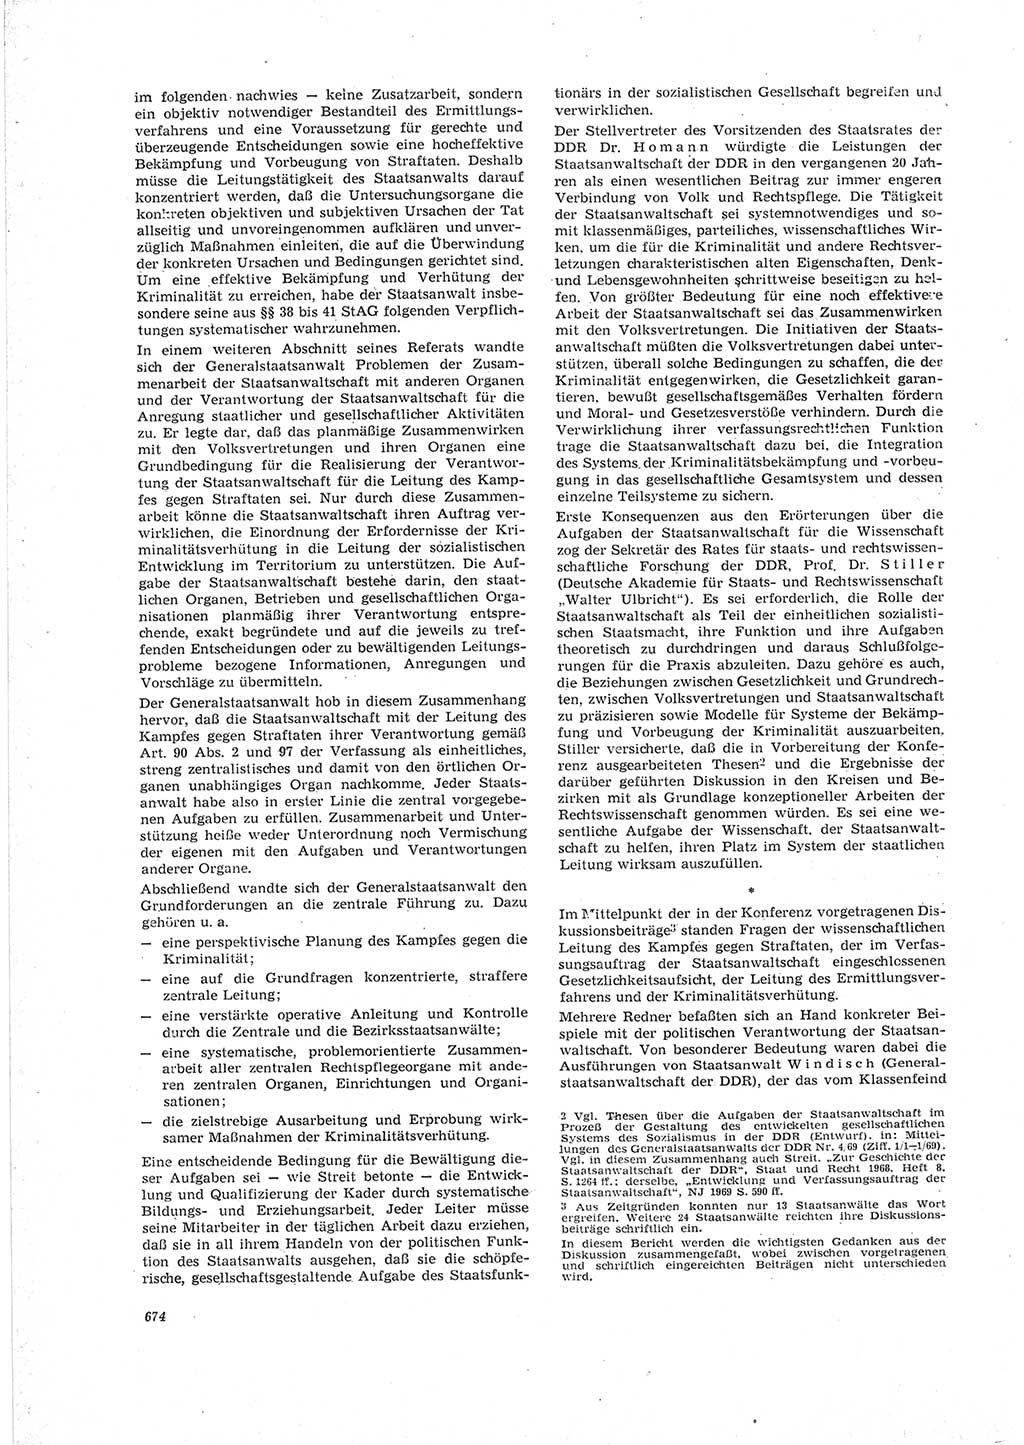 Neue Justiz (NJ), Zeitschrift für Recht und Rechtswissenschaft [Deutsche Demokratische Republik (DDR)], 23. Jahrgang 1969, Seite 674 (NJ DDR 1969, S. 674)